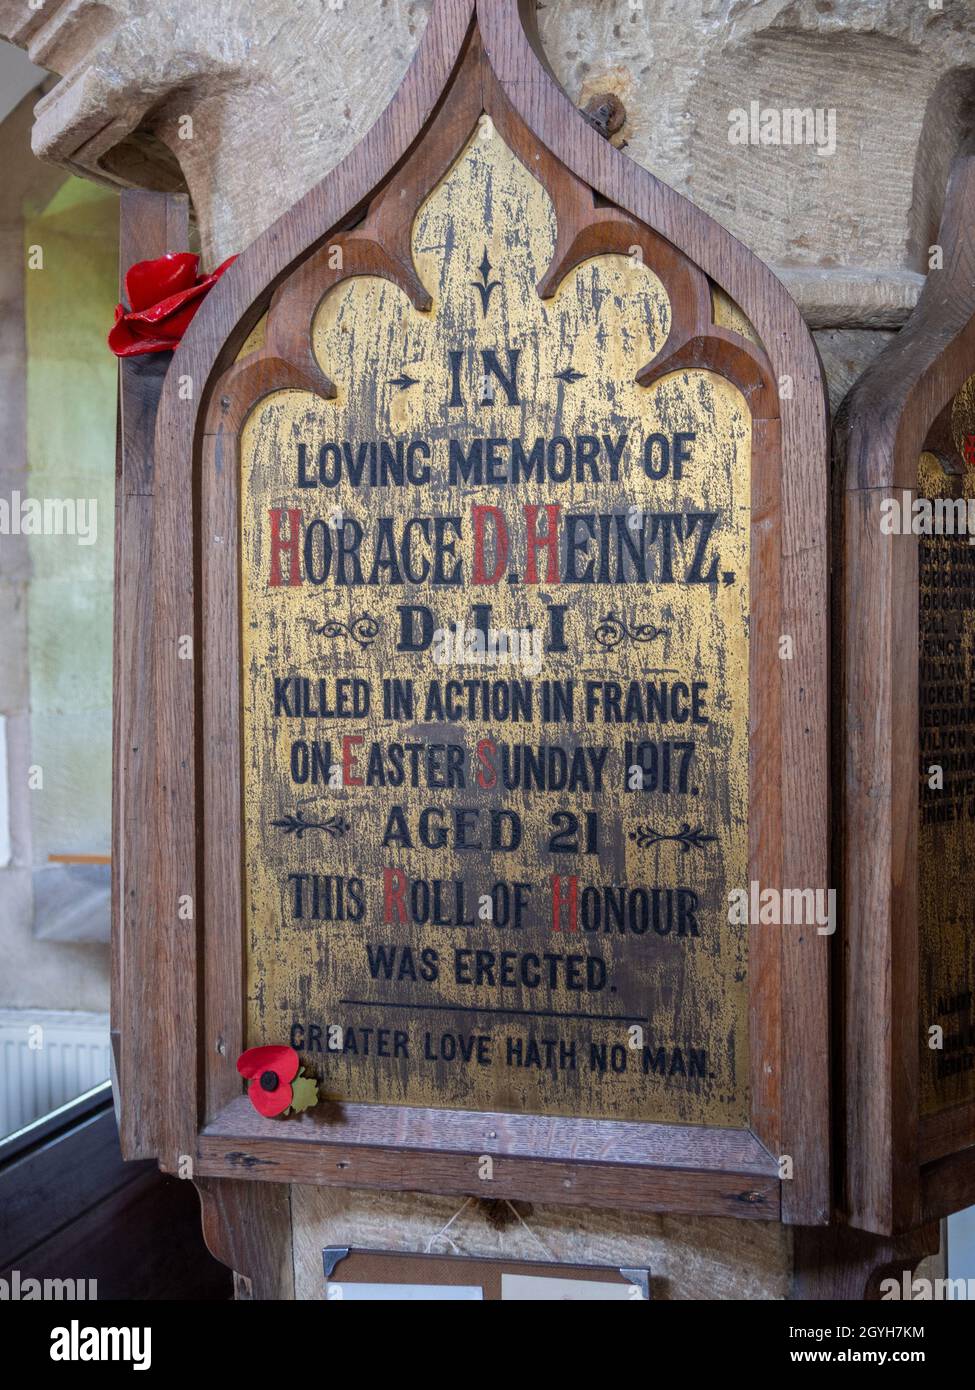 Beschriftete hölzerne Gedenktafel für Horace Heintz, die während des 1. Weltkriegs in Aktion getötet wurde, St. John the Baptist Church, Chelmorton, Derbyshire, Großbritannien Stockfoto